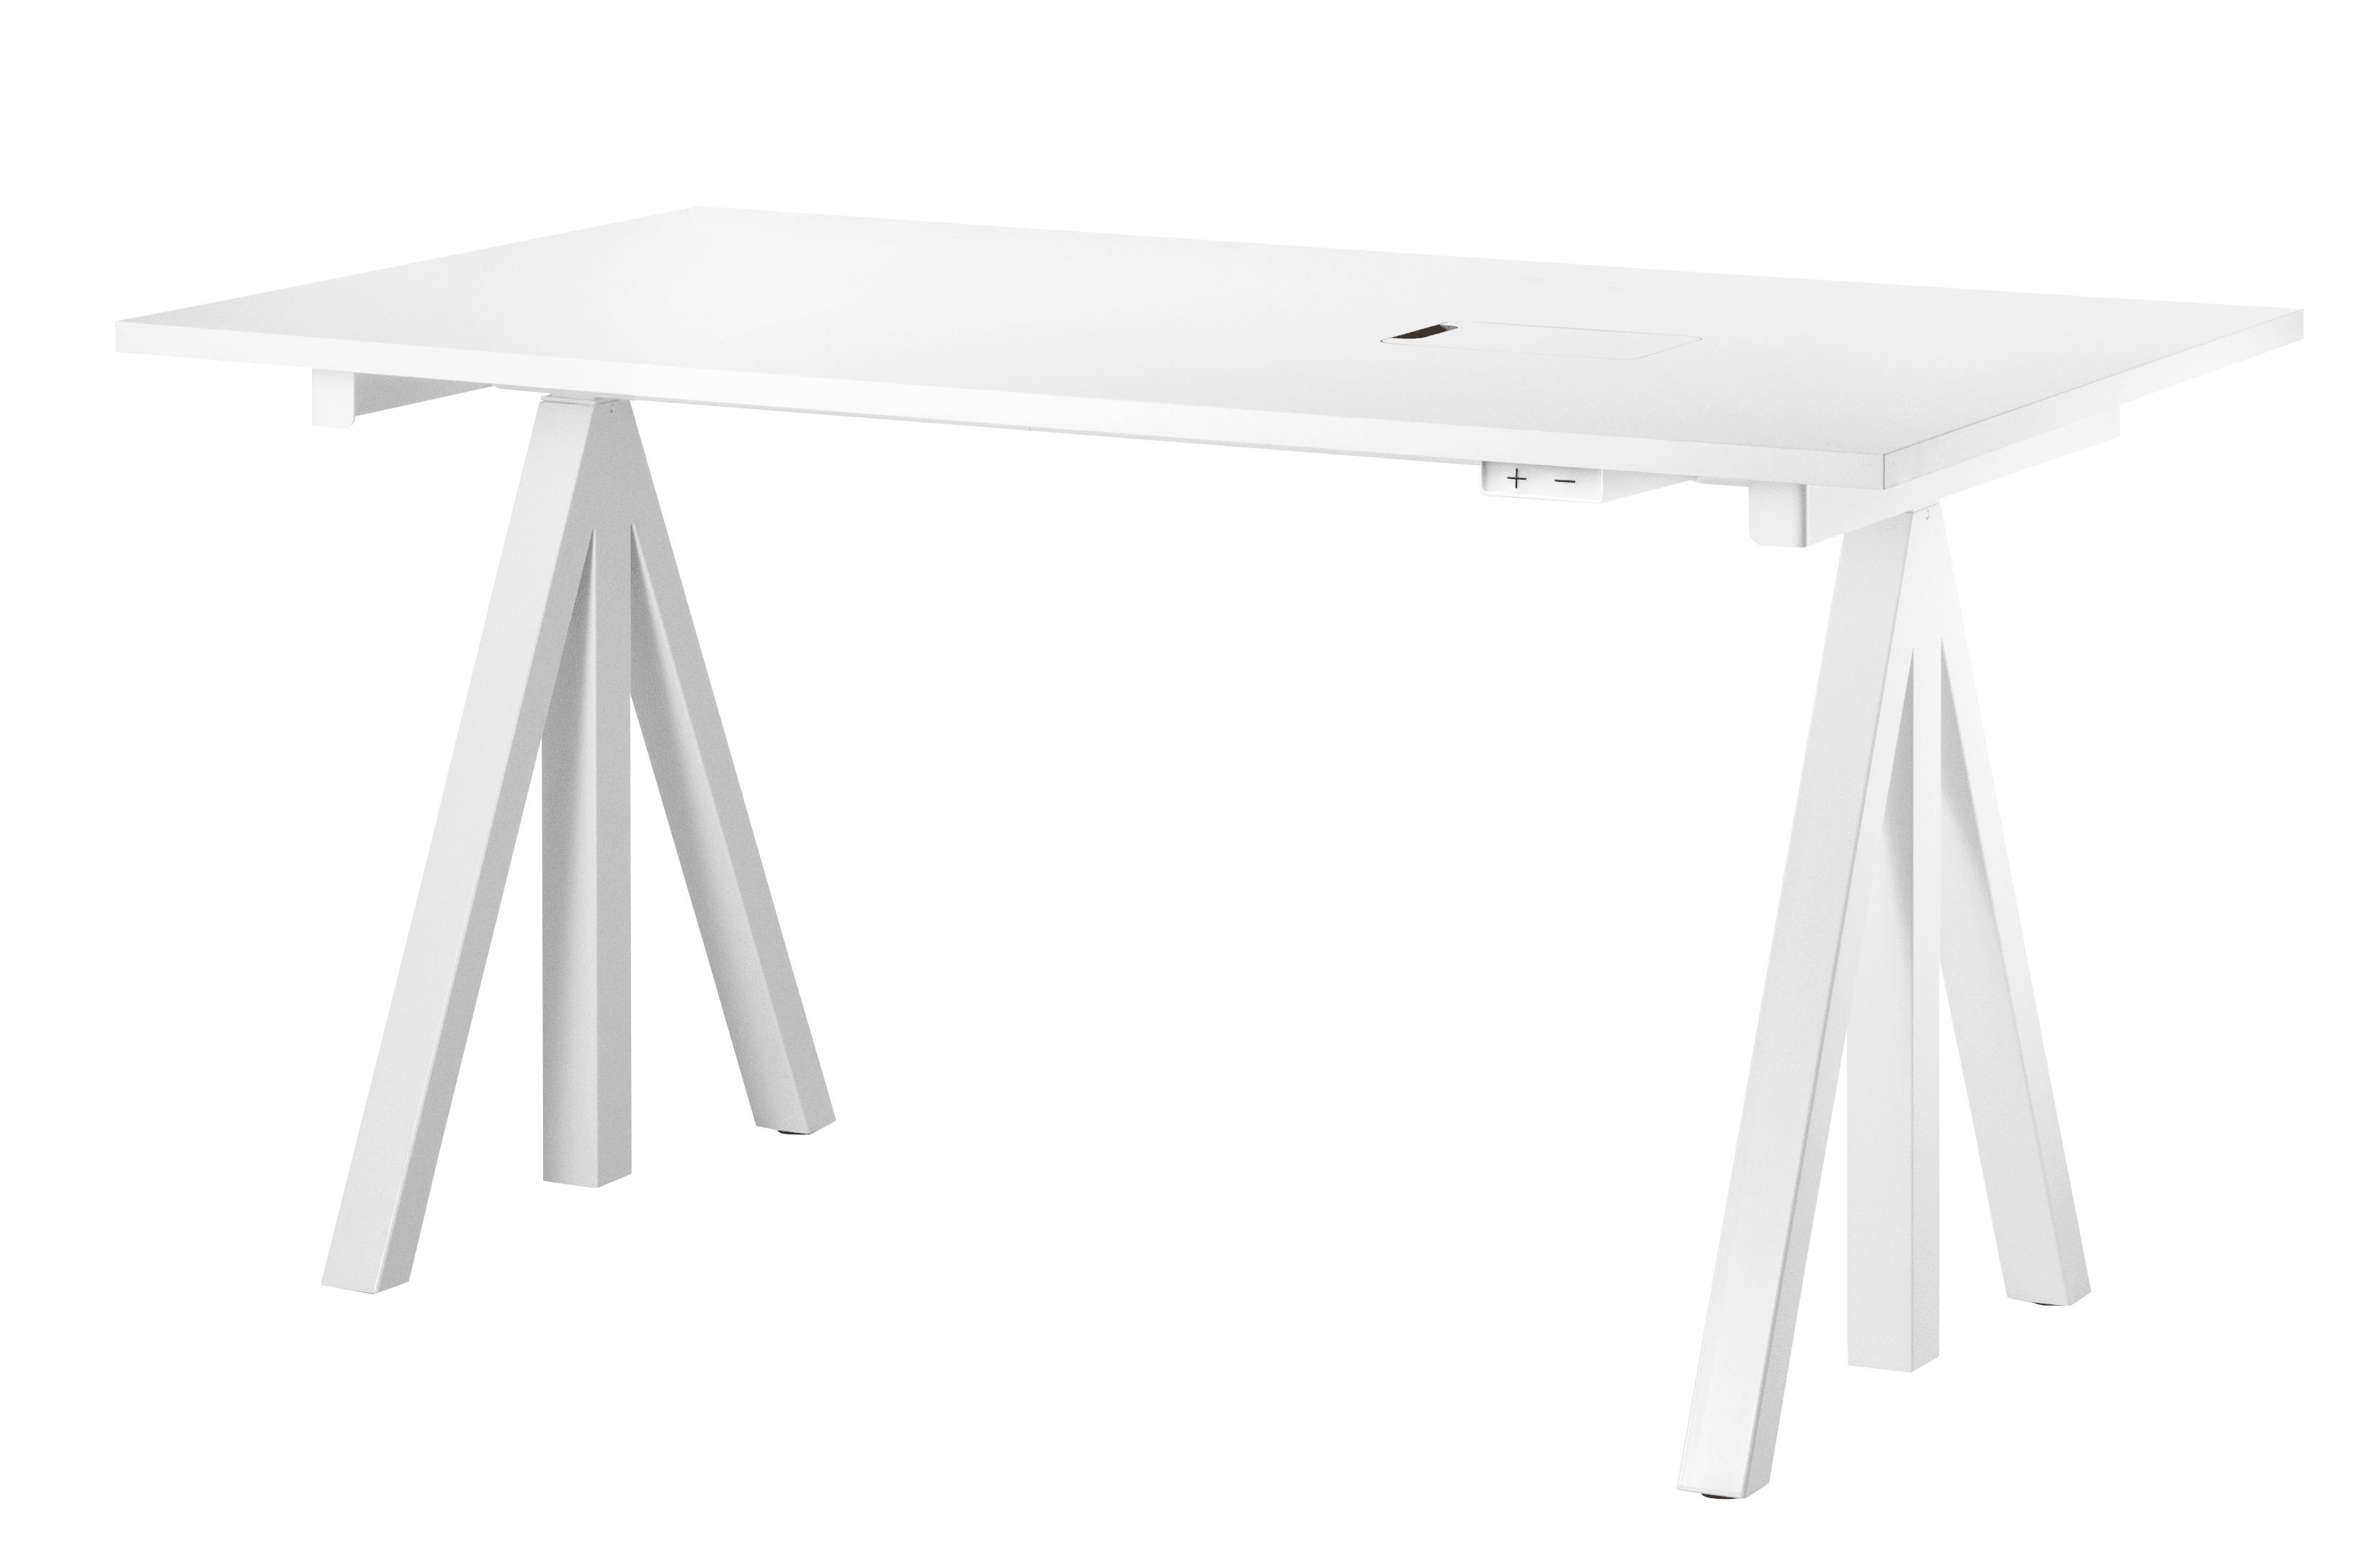 Höhenverstellbare Schreibtischplatte, elektrisch, weiß, 140x78 cm, höchste Position